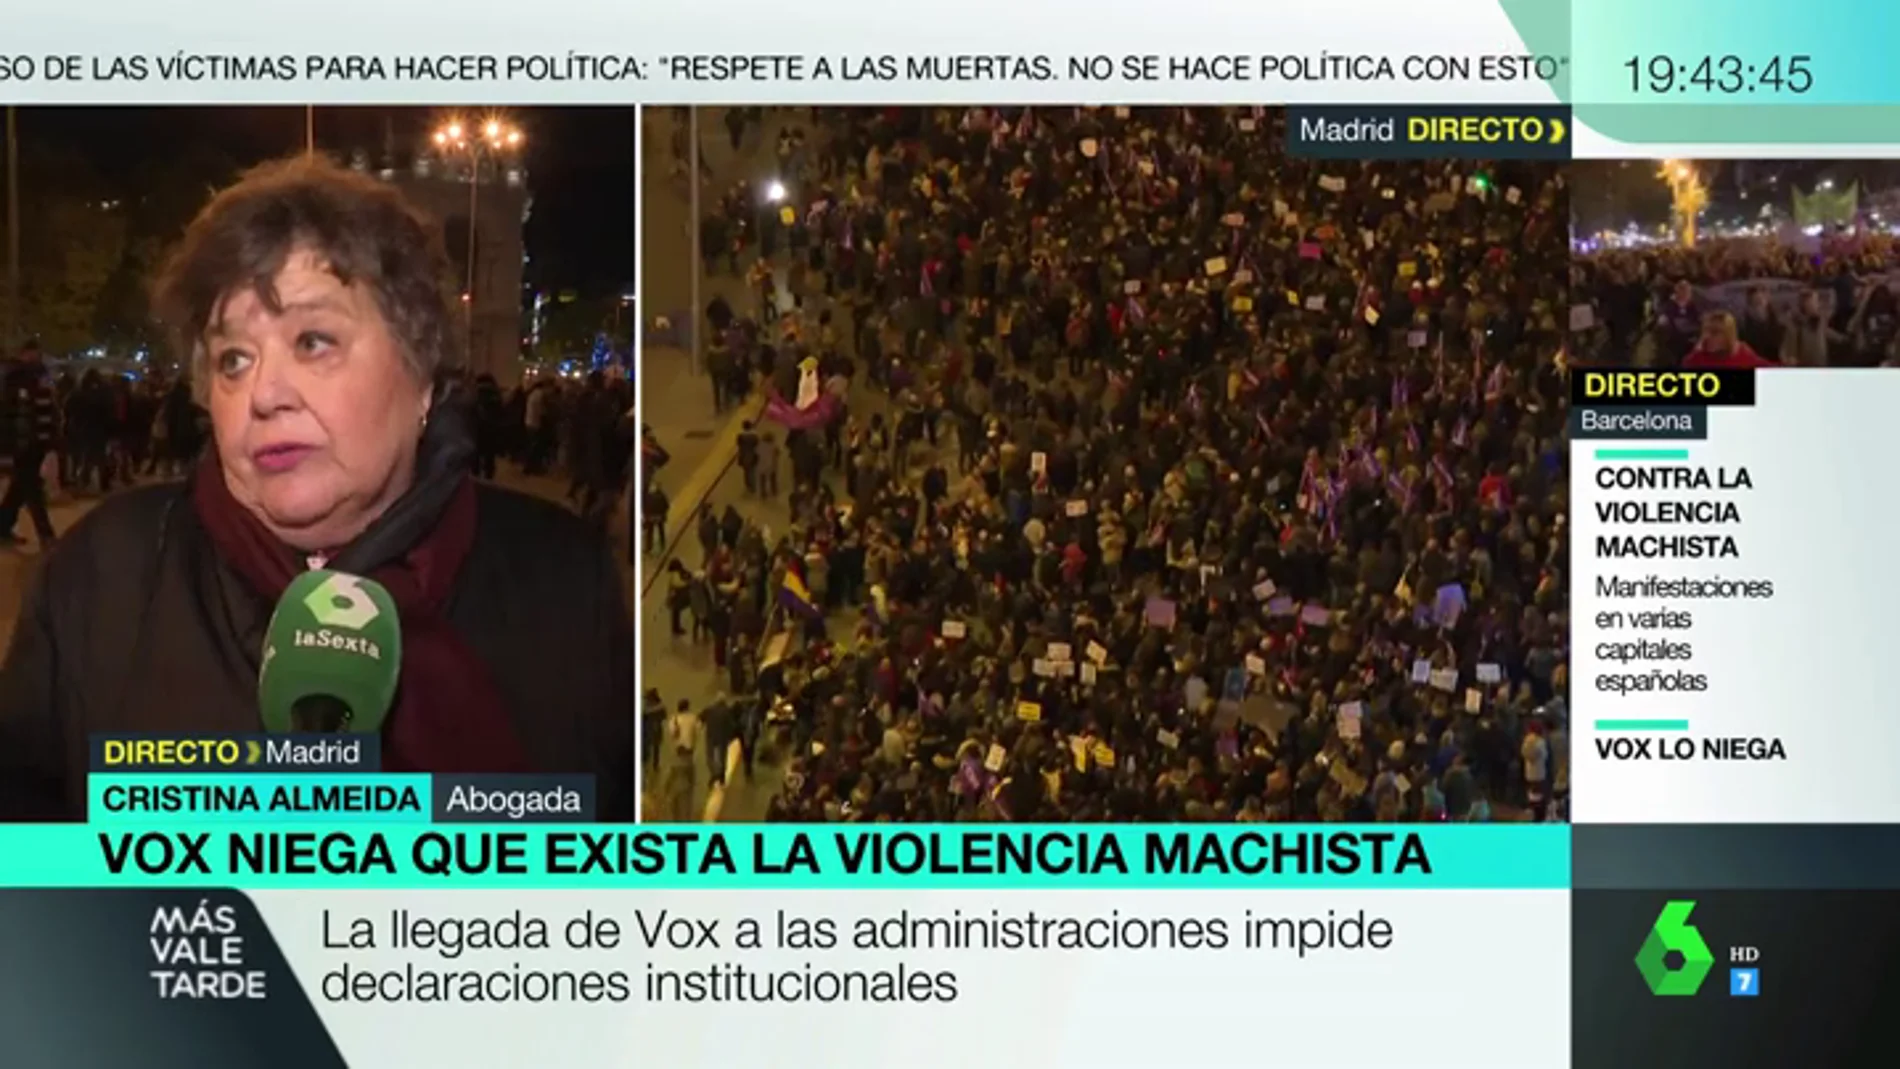 Cristina Almeida carga contra PP y Ciudadanos: "Rompen el consenso institucional y con las mujeres por tres votos"